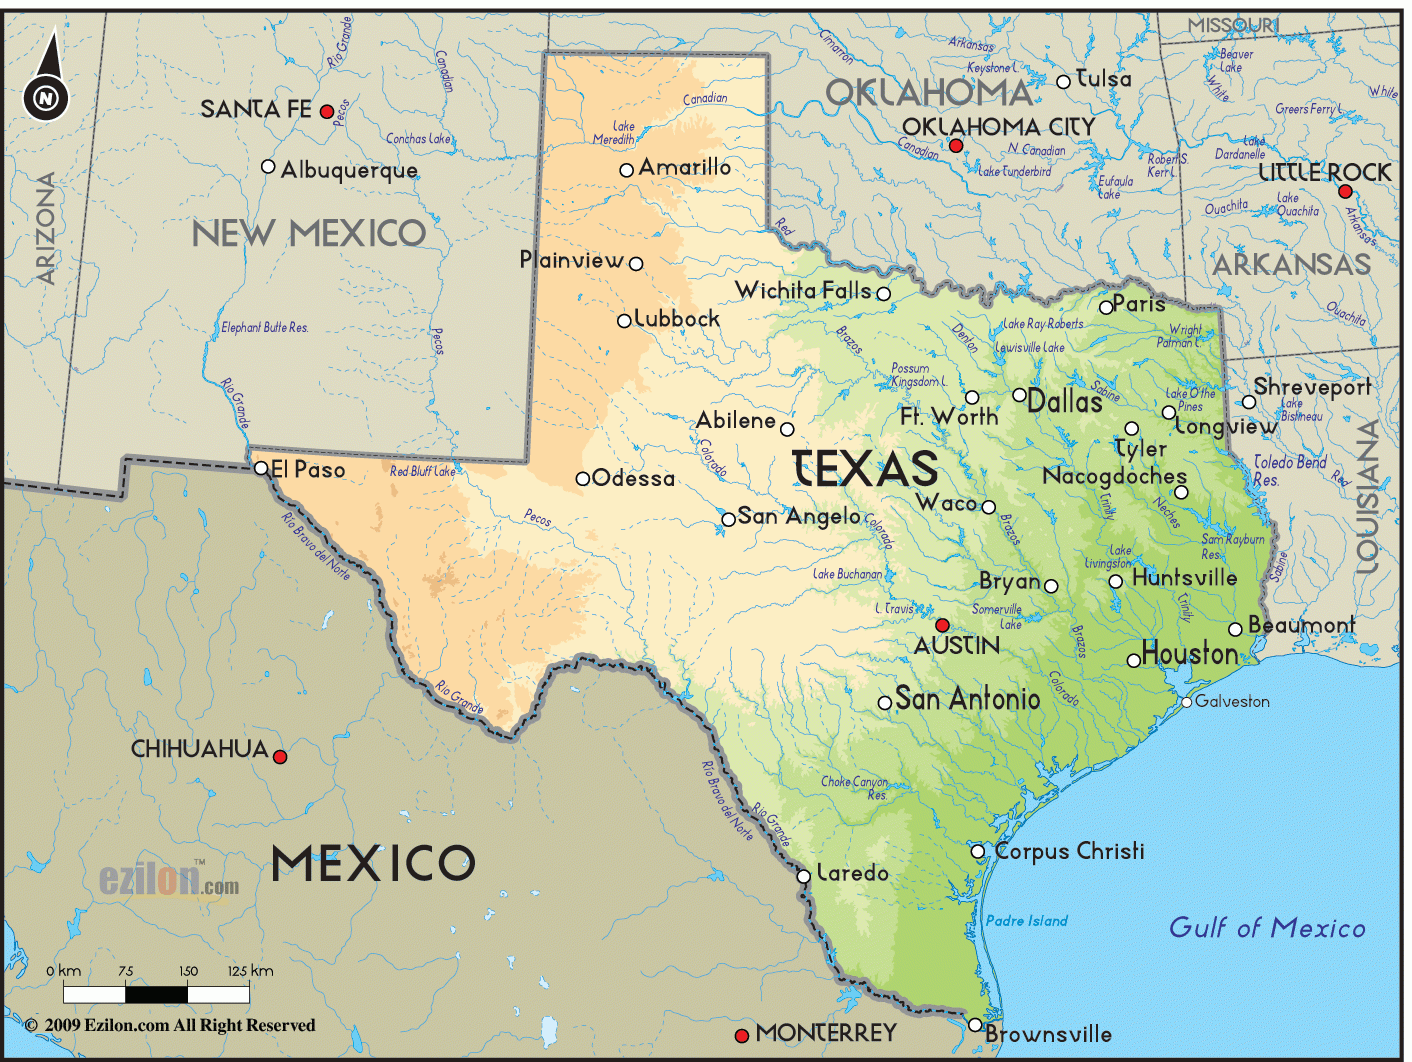 Texas Geograf a F sica La Gu a De Geograf a